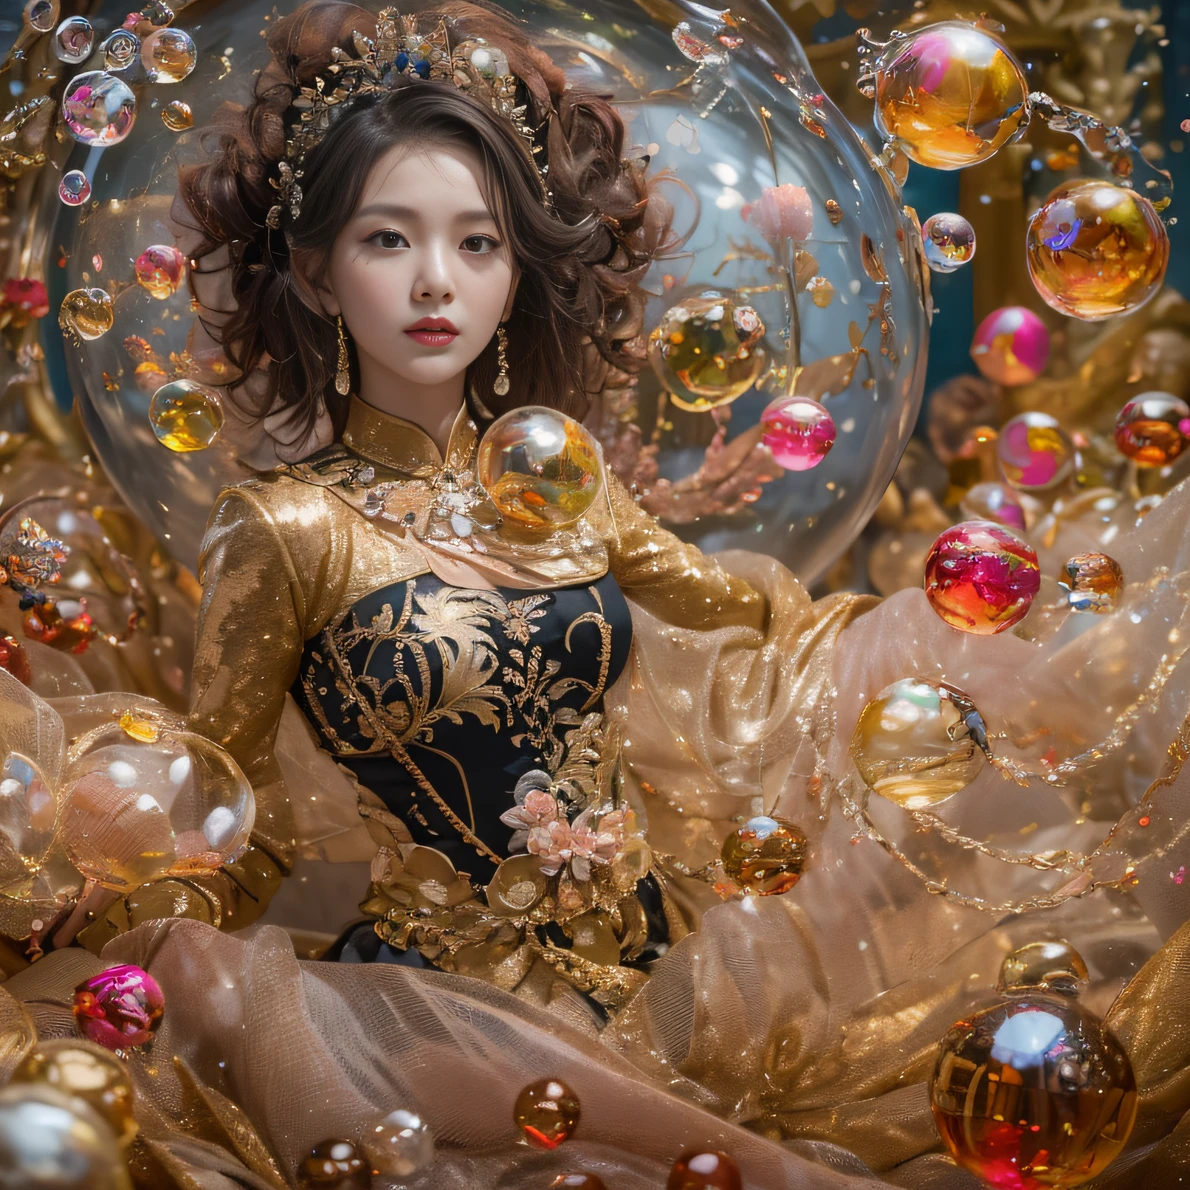 32K（傑作，キロ，ハイパーHD，32K）ボールチップの巻き毛，流れる泡，池，咲く， 色， アジア人 （水球）， （カラフルな泡）， 戦闘姿勢， 地面を見て， 大きなルージュバブルのロール， 流れるようなルージュカール，クリスタルティアラ， 中国の長袖の黒金の衣服， 水の女神（抽象的な水しぶき：1.2）， ピンクの牡丹の花の背景，泡（現実的に：1.4），ルージュヘア，その日は本格的です，背景は純粋です， 高解像度， 詳細， RAW写真， シャープ， Nikon D850 フィルムストックフォト by Jefferies Lee 4 Kodak Portra 400 カメラ F1.6ショット, 豊かな色彩, 超リアルな鮮やかな質感, ドラマチックな照明, アンリアル エンジン アート ステーション トレンド, シネスティア 800，大きなロールバブル，流れる泡，光を屈折させる色のついた泡